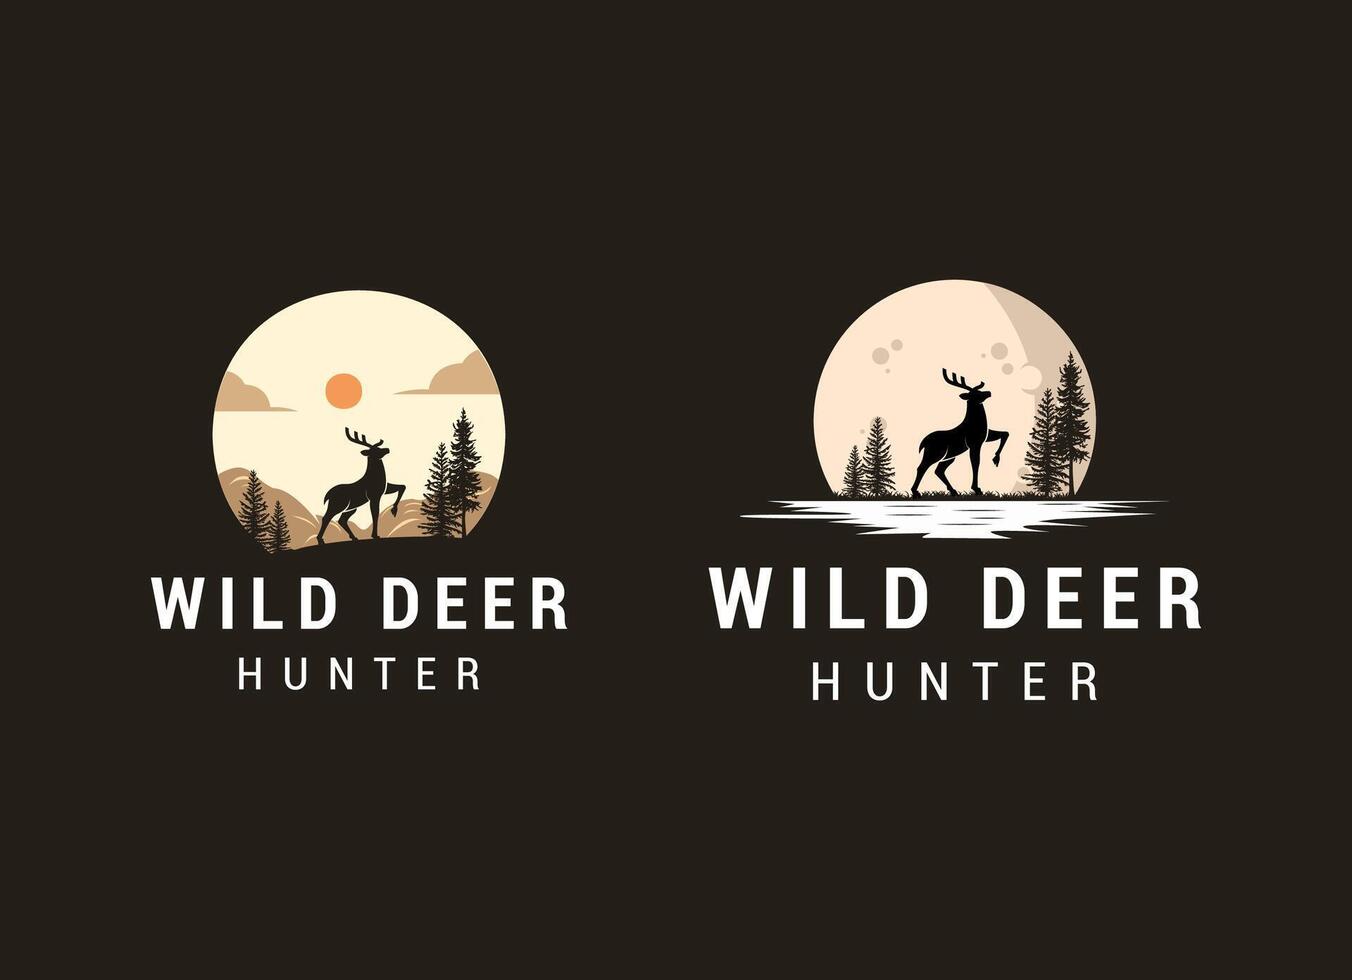 Wild deer logo design. Silhouette of deer logo vector